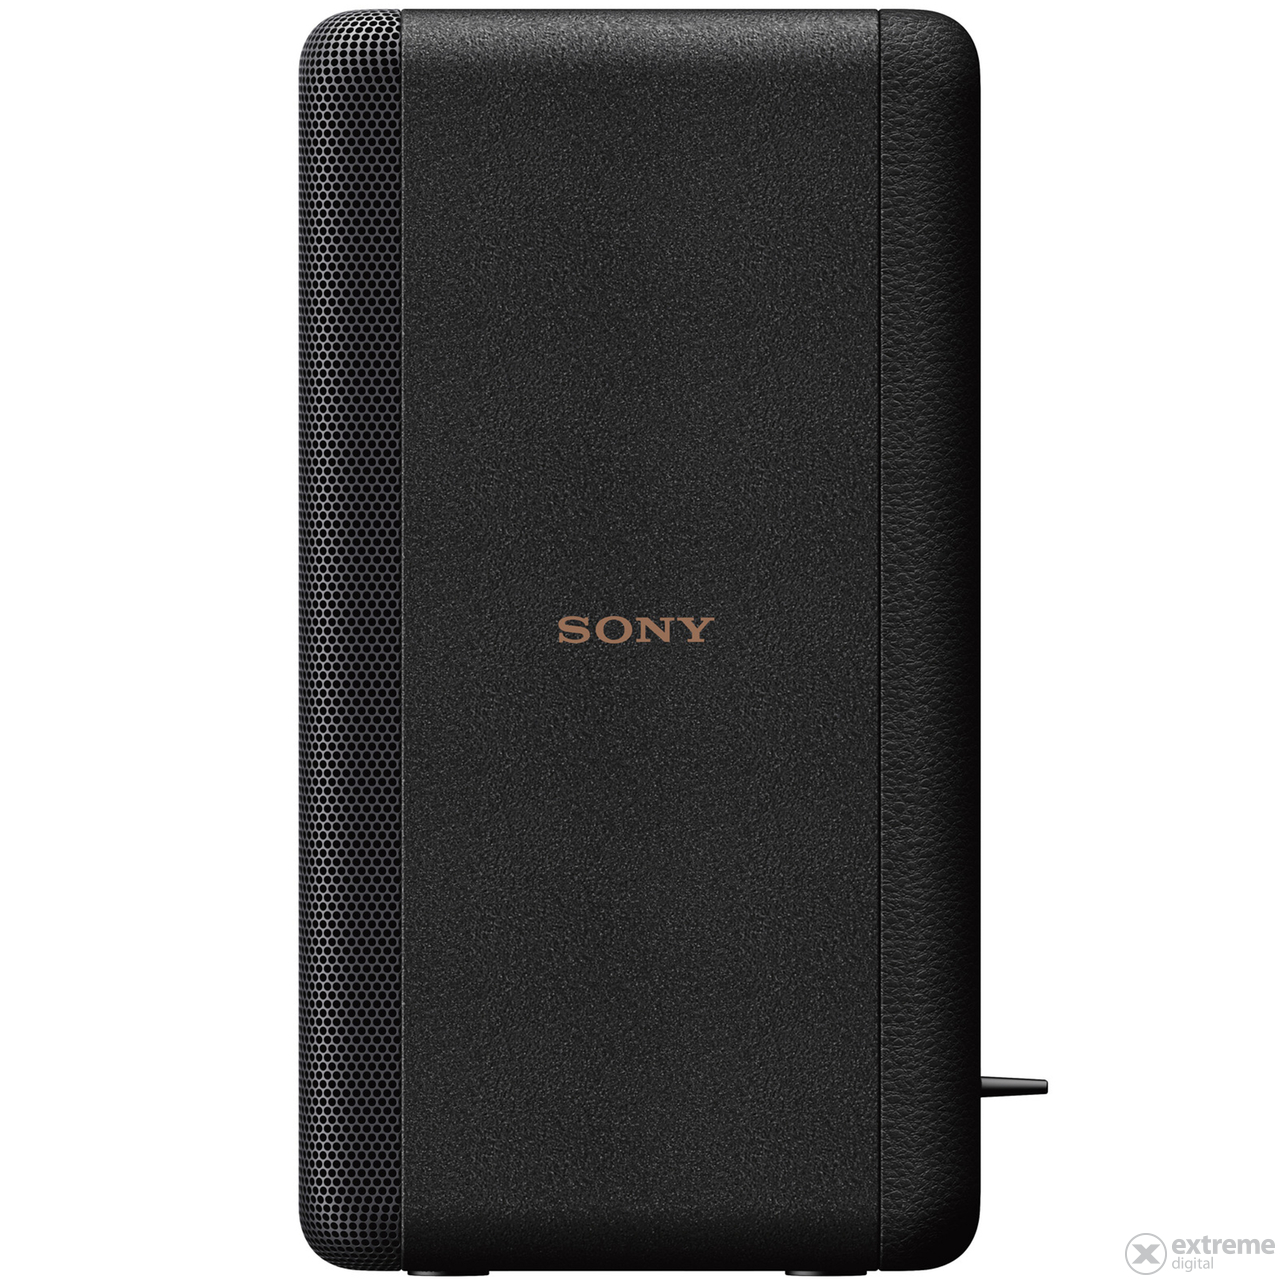 Sony SARS3S kabellos, Lautsprecher zu Soundprojektor, hintere Seite, schwarz